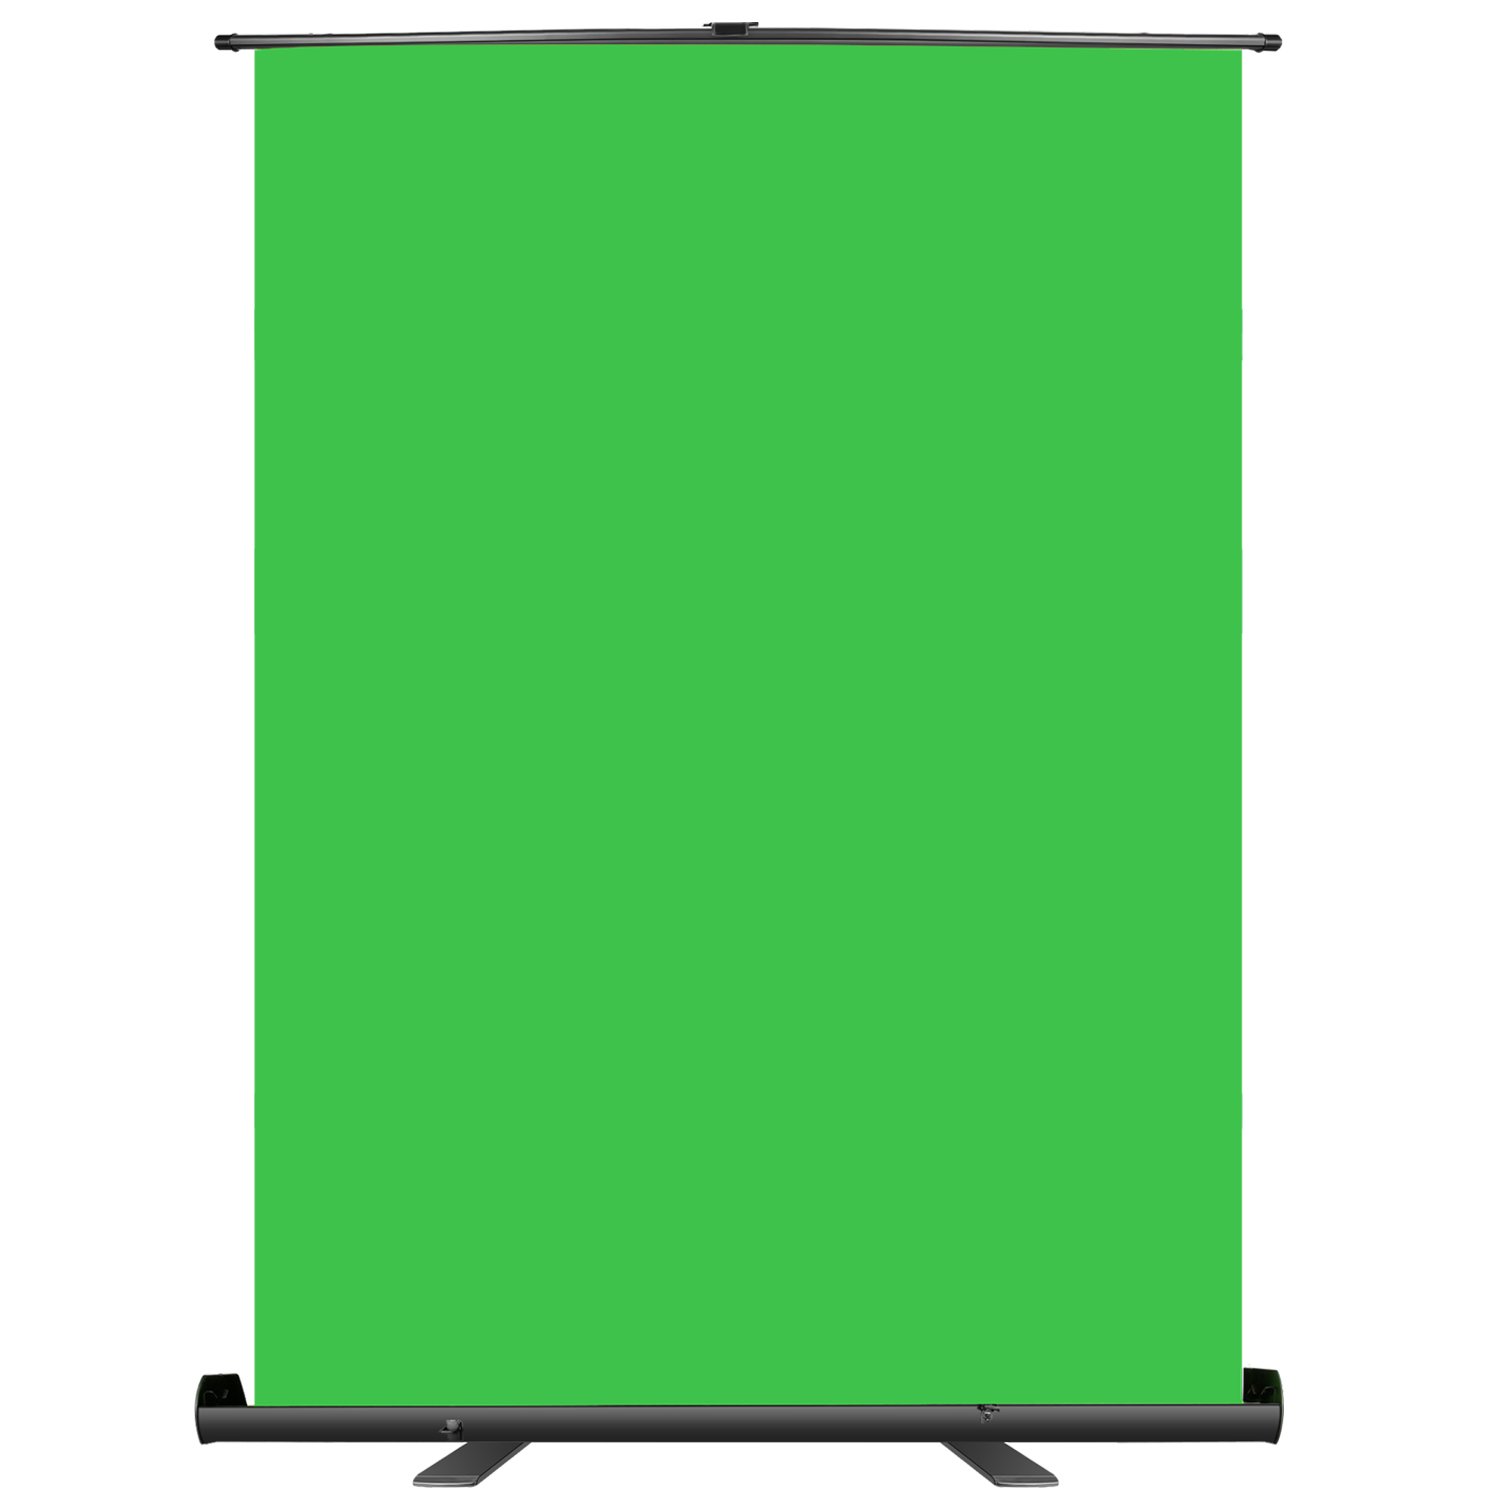 Bạn muốn mua một phông nền xanh lá cây di động để sử dụng cho nhiều mục đích khác nhau? Chúng tôi khuyên bạn nên mua Neewer 148x180cm phông nền xanh lá cây, di động. Với kích thước lớn và thiết kế di động tiện lợi, phông nền này sẽ giúp bạn tạo ra những video ấn tượng và chuyên nghiệp.